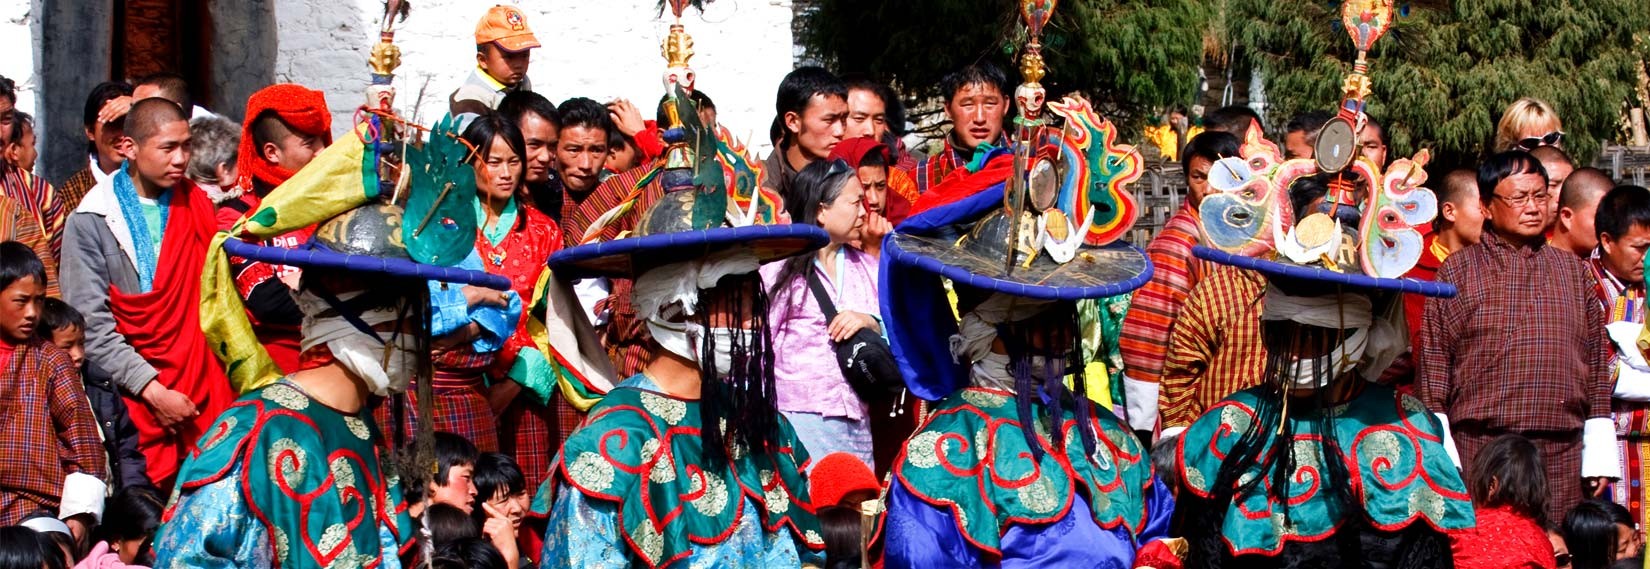 Festival in Bhutan 